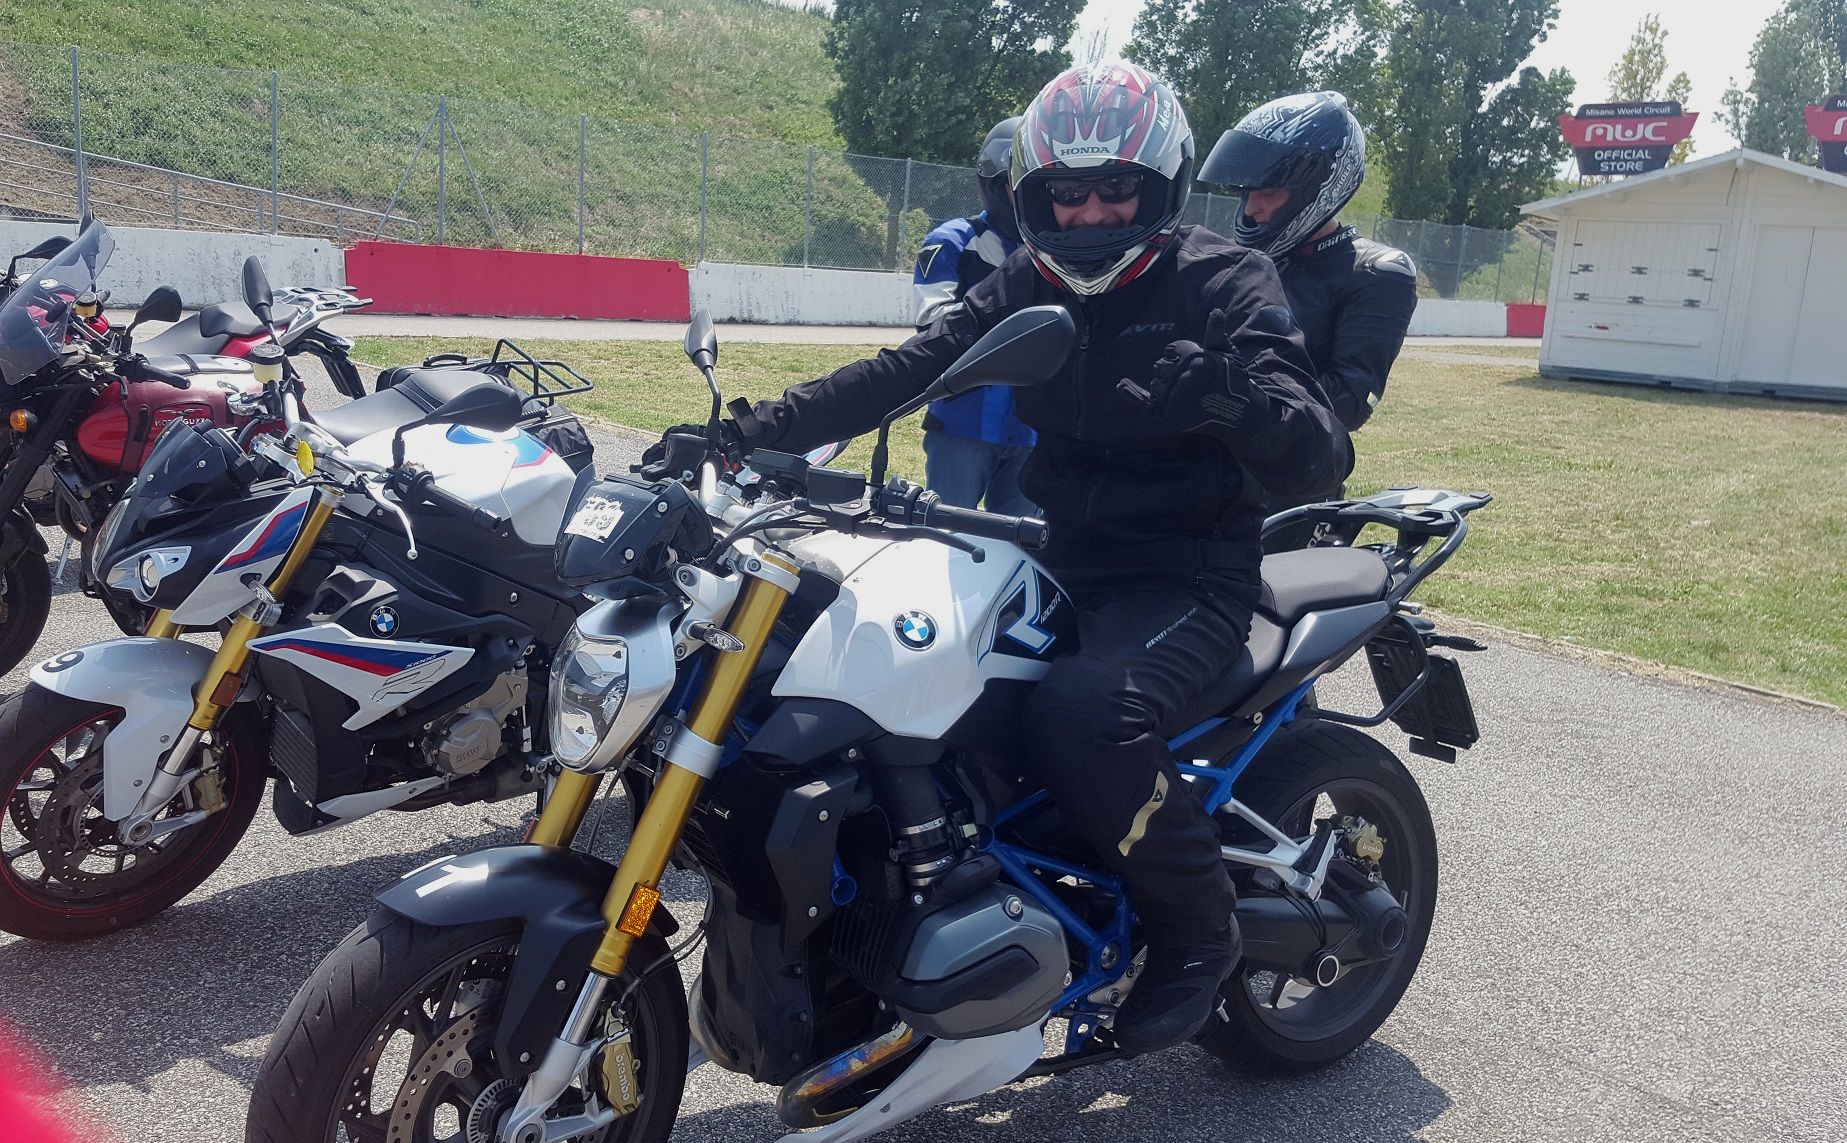 Corso di guida sicura moto: la nostra giornata a Misano